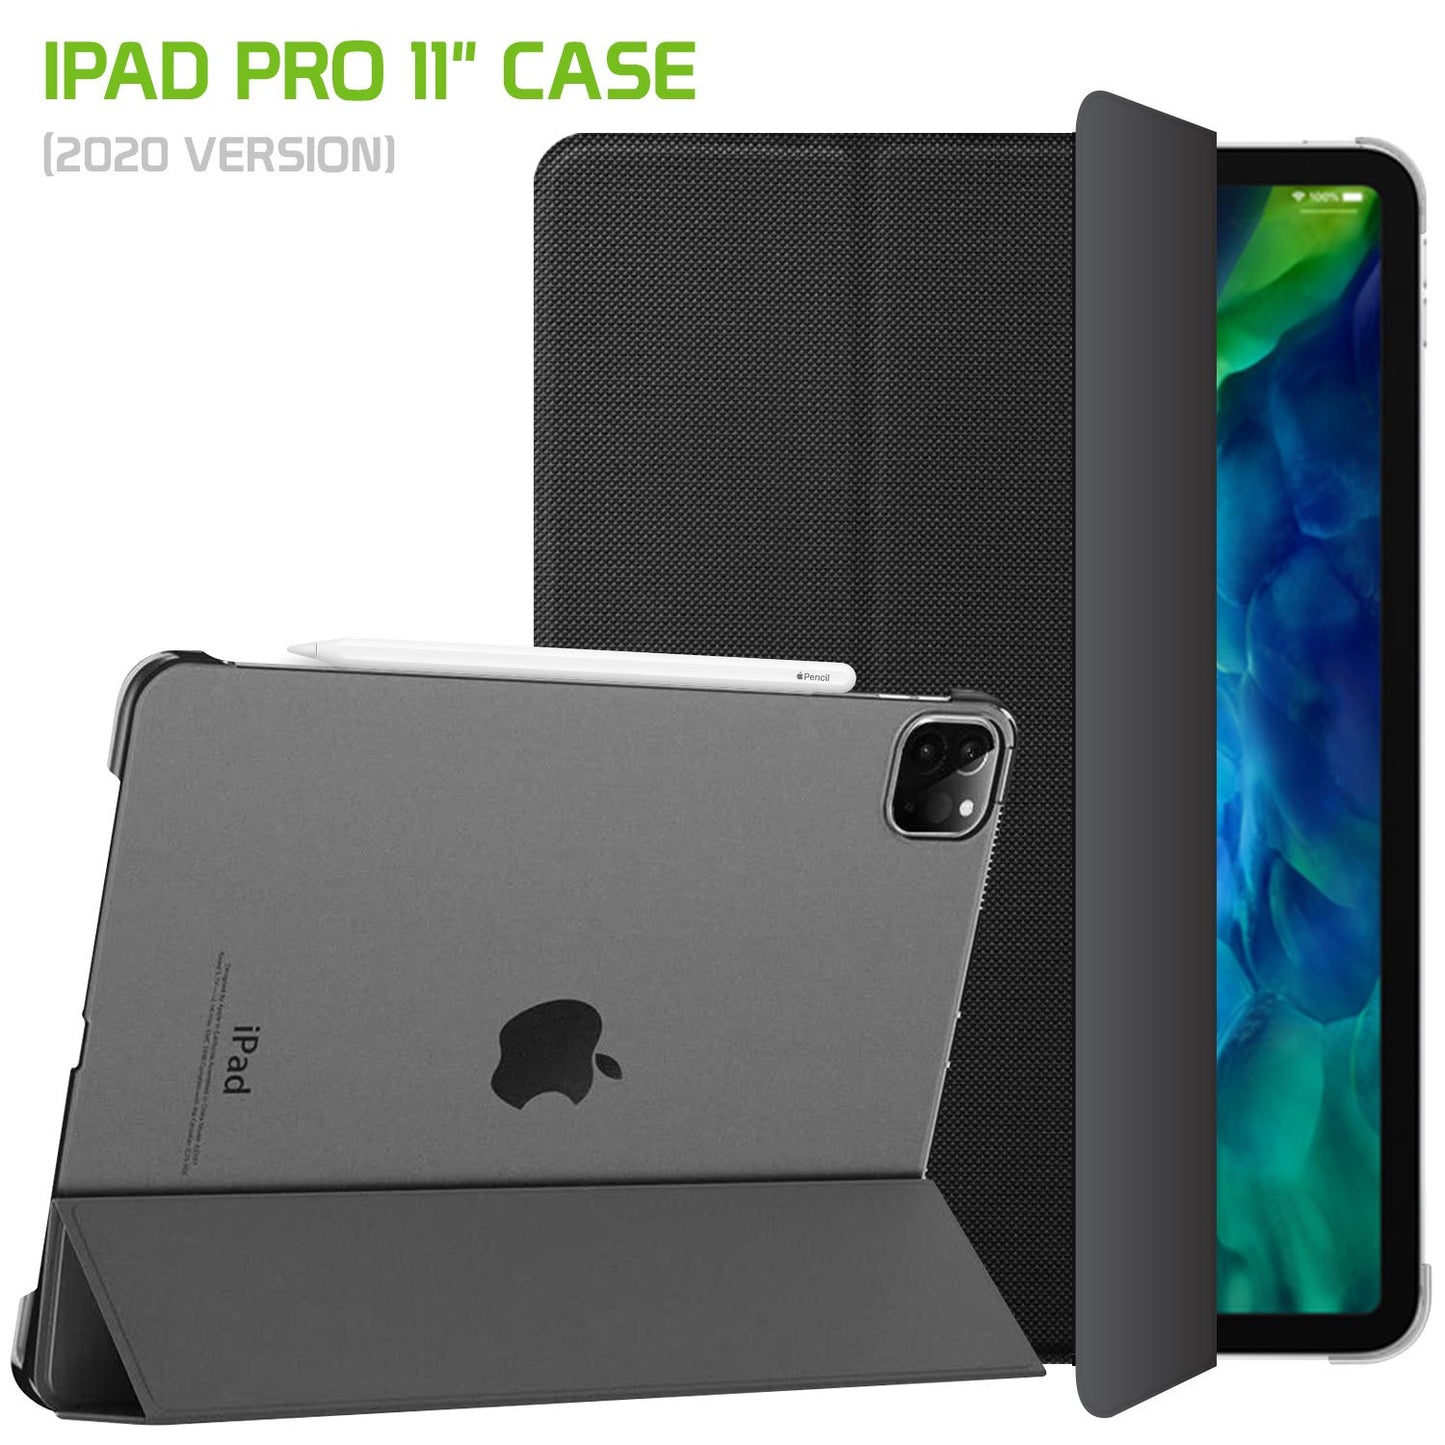 CCIPADPRO11 - iPad Pro 11" (2020) Heavy Duty Case with Auto Sleep/Wake Function